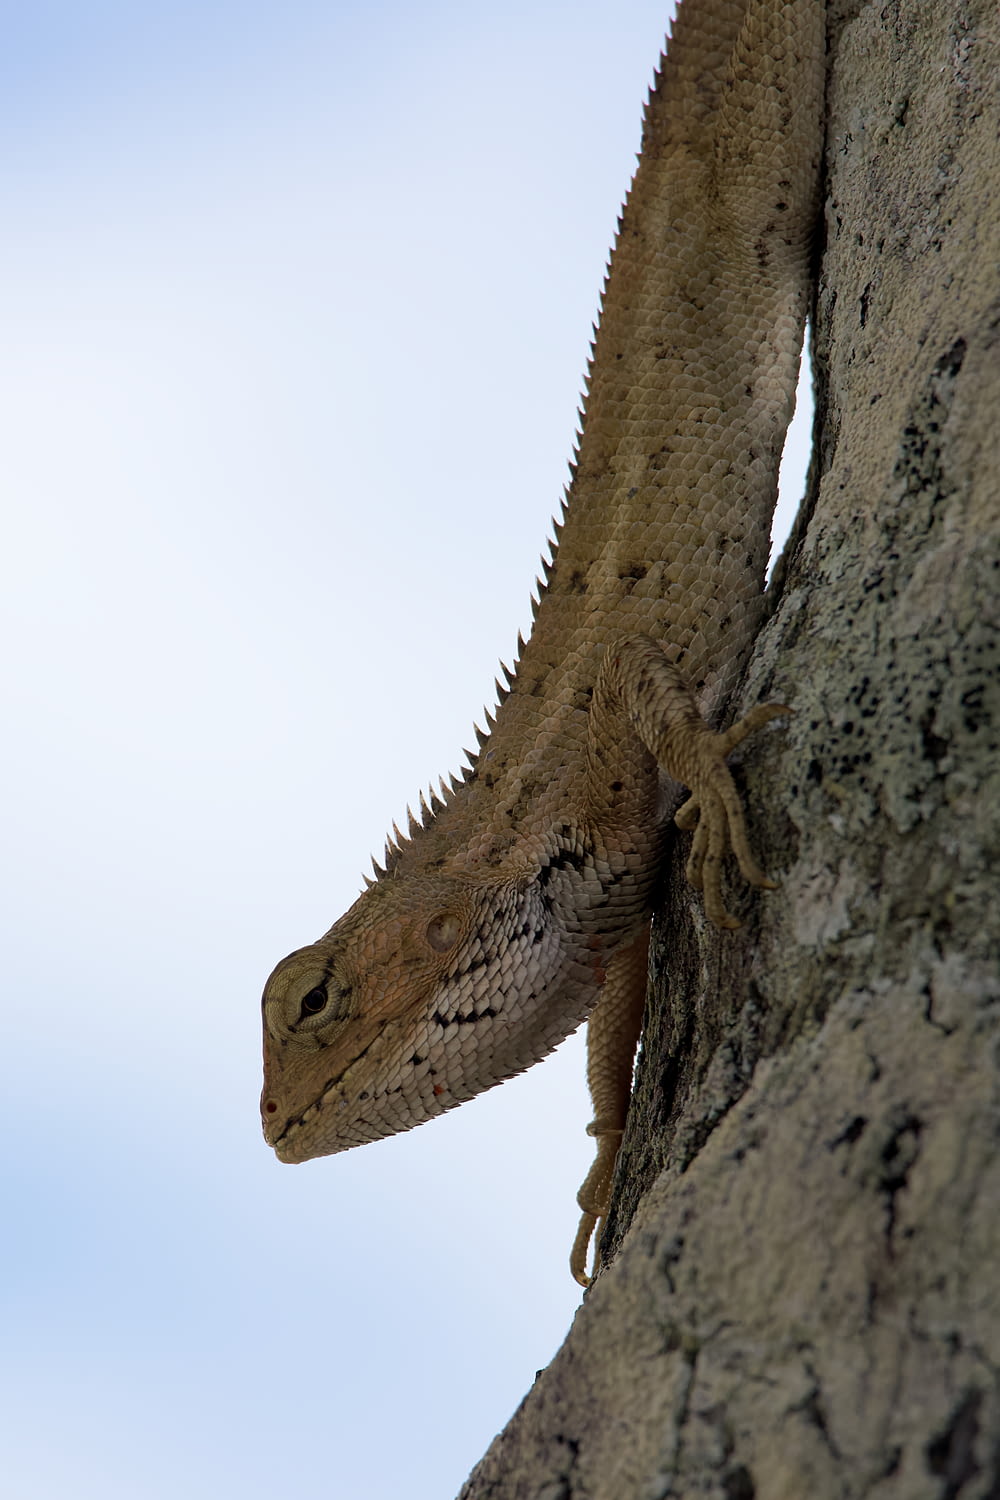 a lizard on a tree